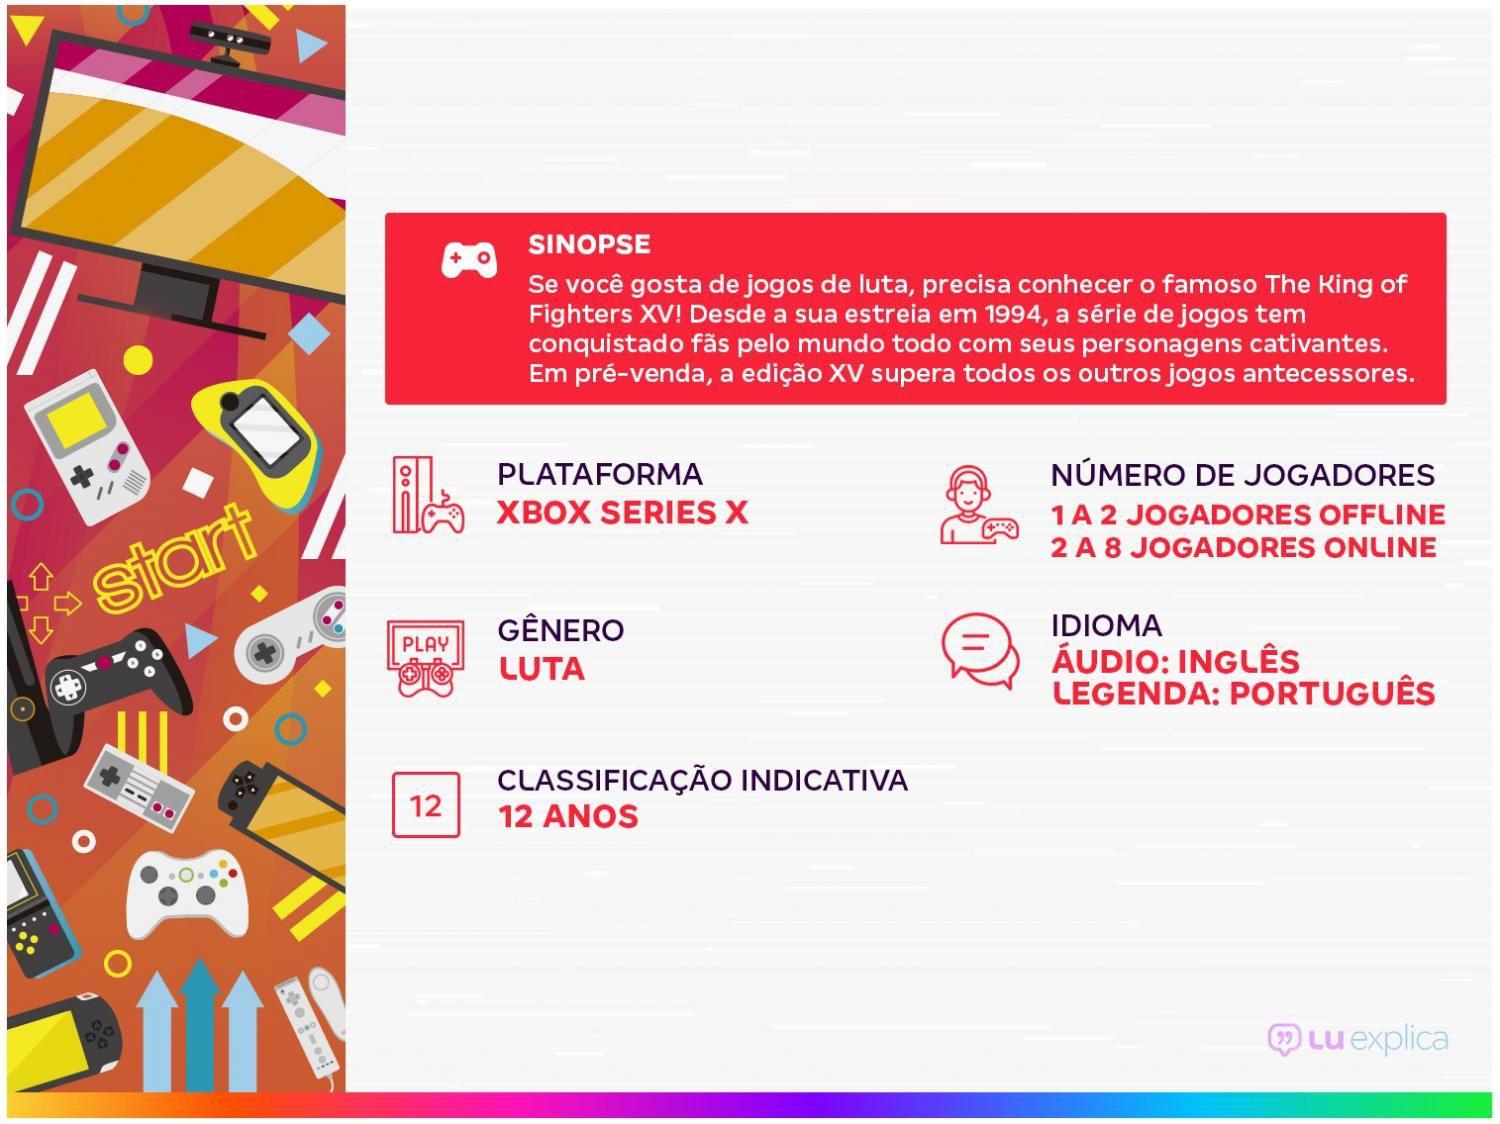 SNK Brasil - Qual a série/jogo da SNK tem os melhores personagens